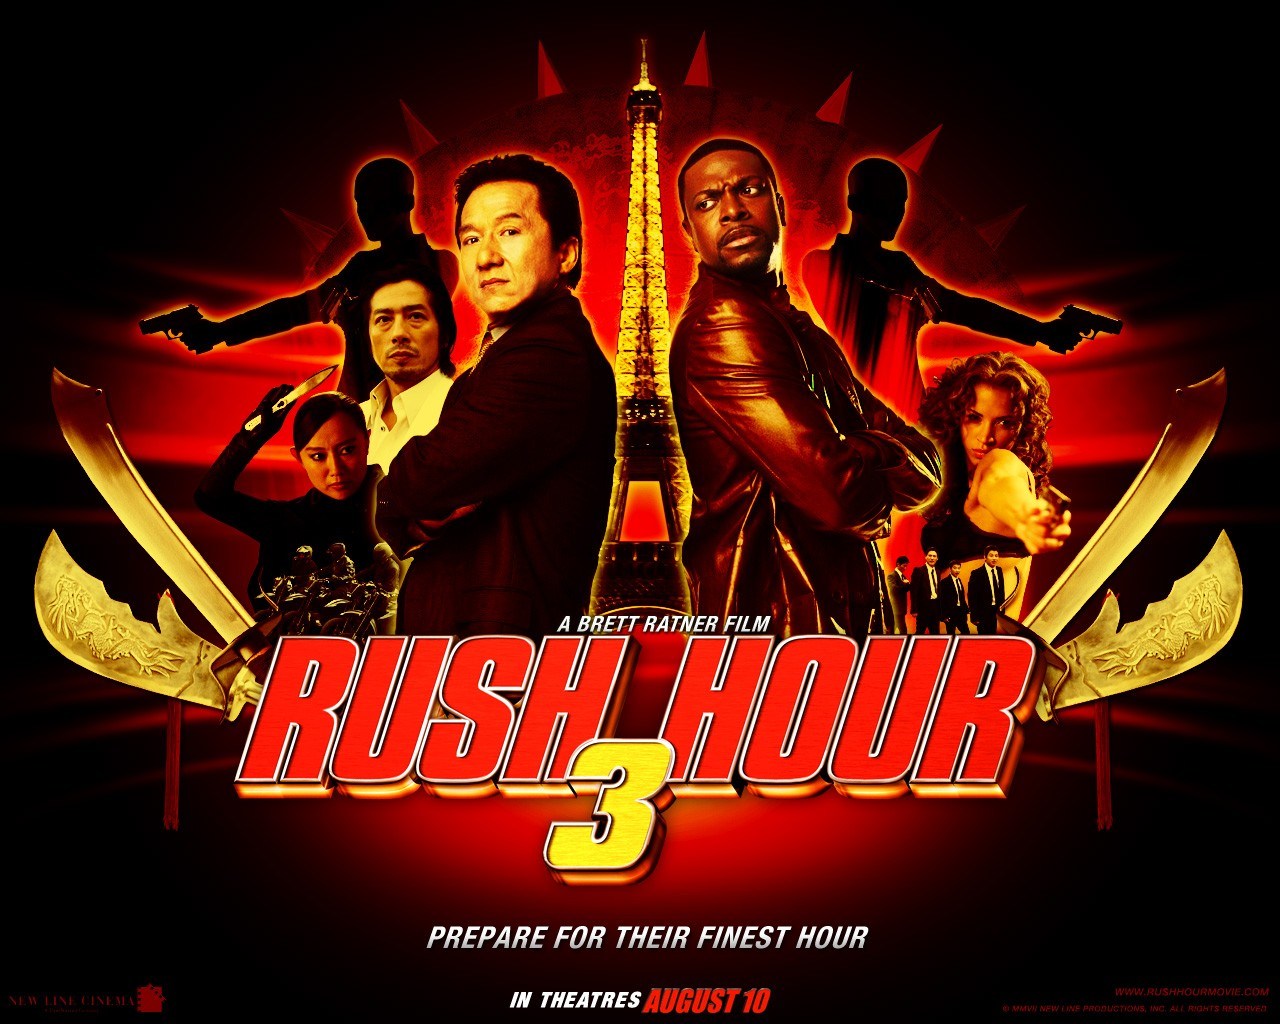 Rush hour 2016 online subtitrat